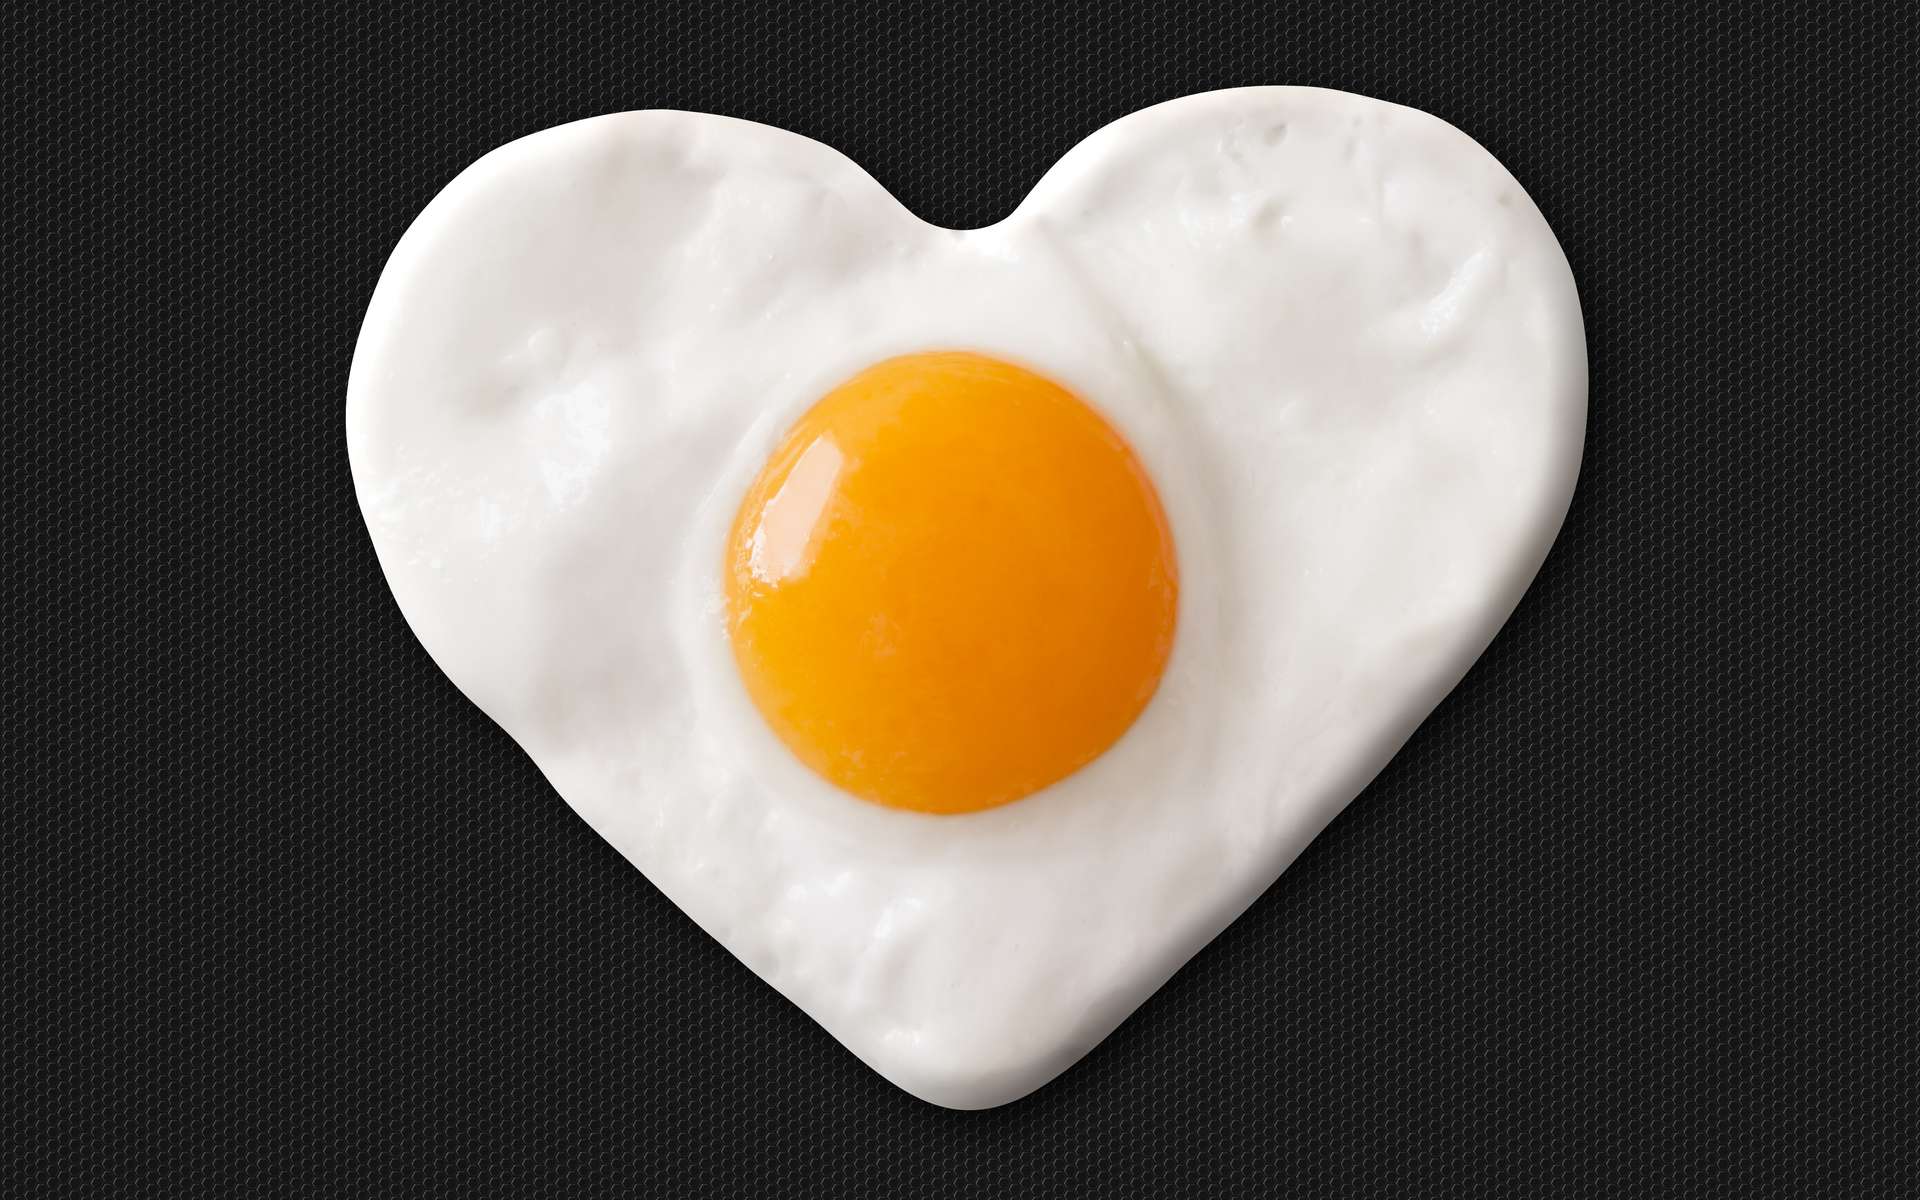 Aucune corrélation sérieuse n'existe entre consommation d'œufs, cholestérol sanguin et maladies cardiovasculaires. © marcelmondocko, Adobe Stock